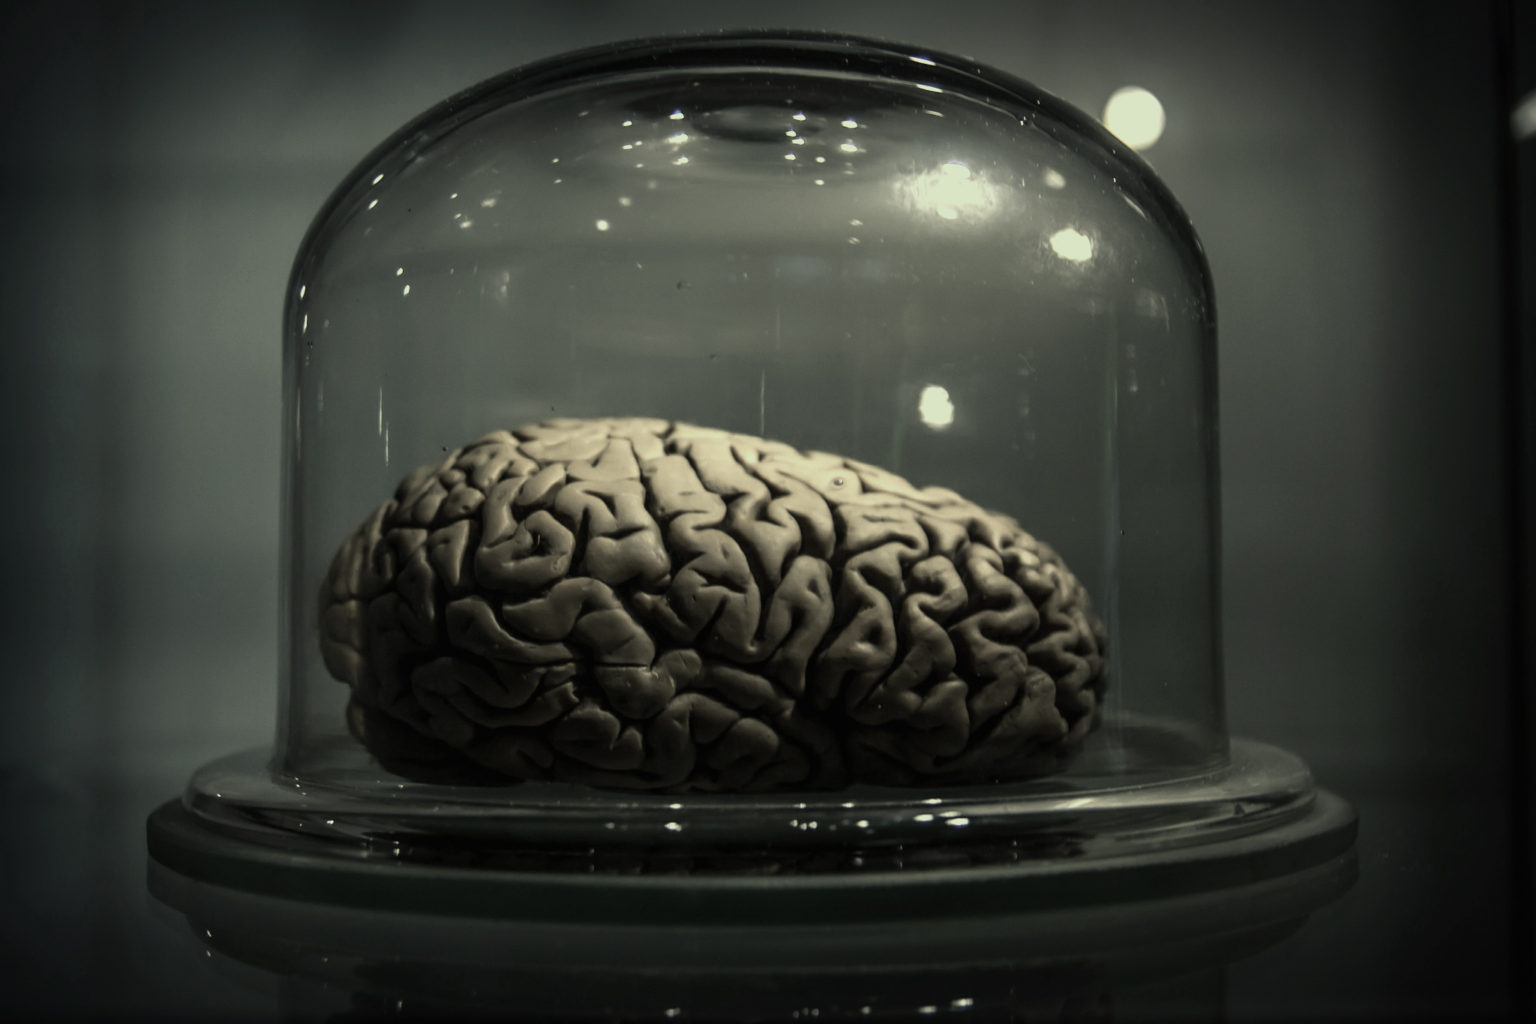  'zu biologisch' für die Vernunft: Getrocknetes Gehirn (© Riccardo Meneghini, Flickr)